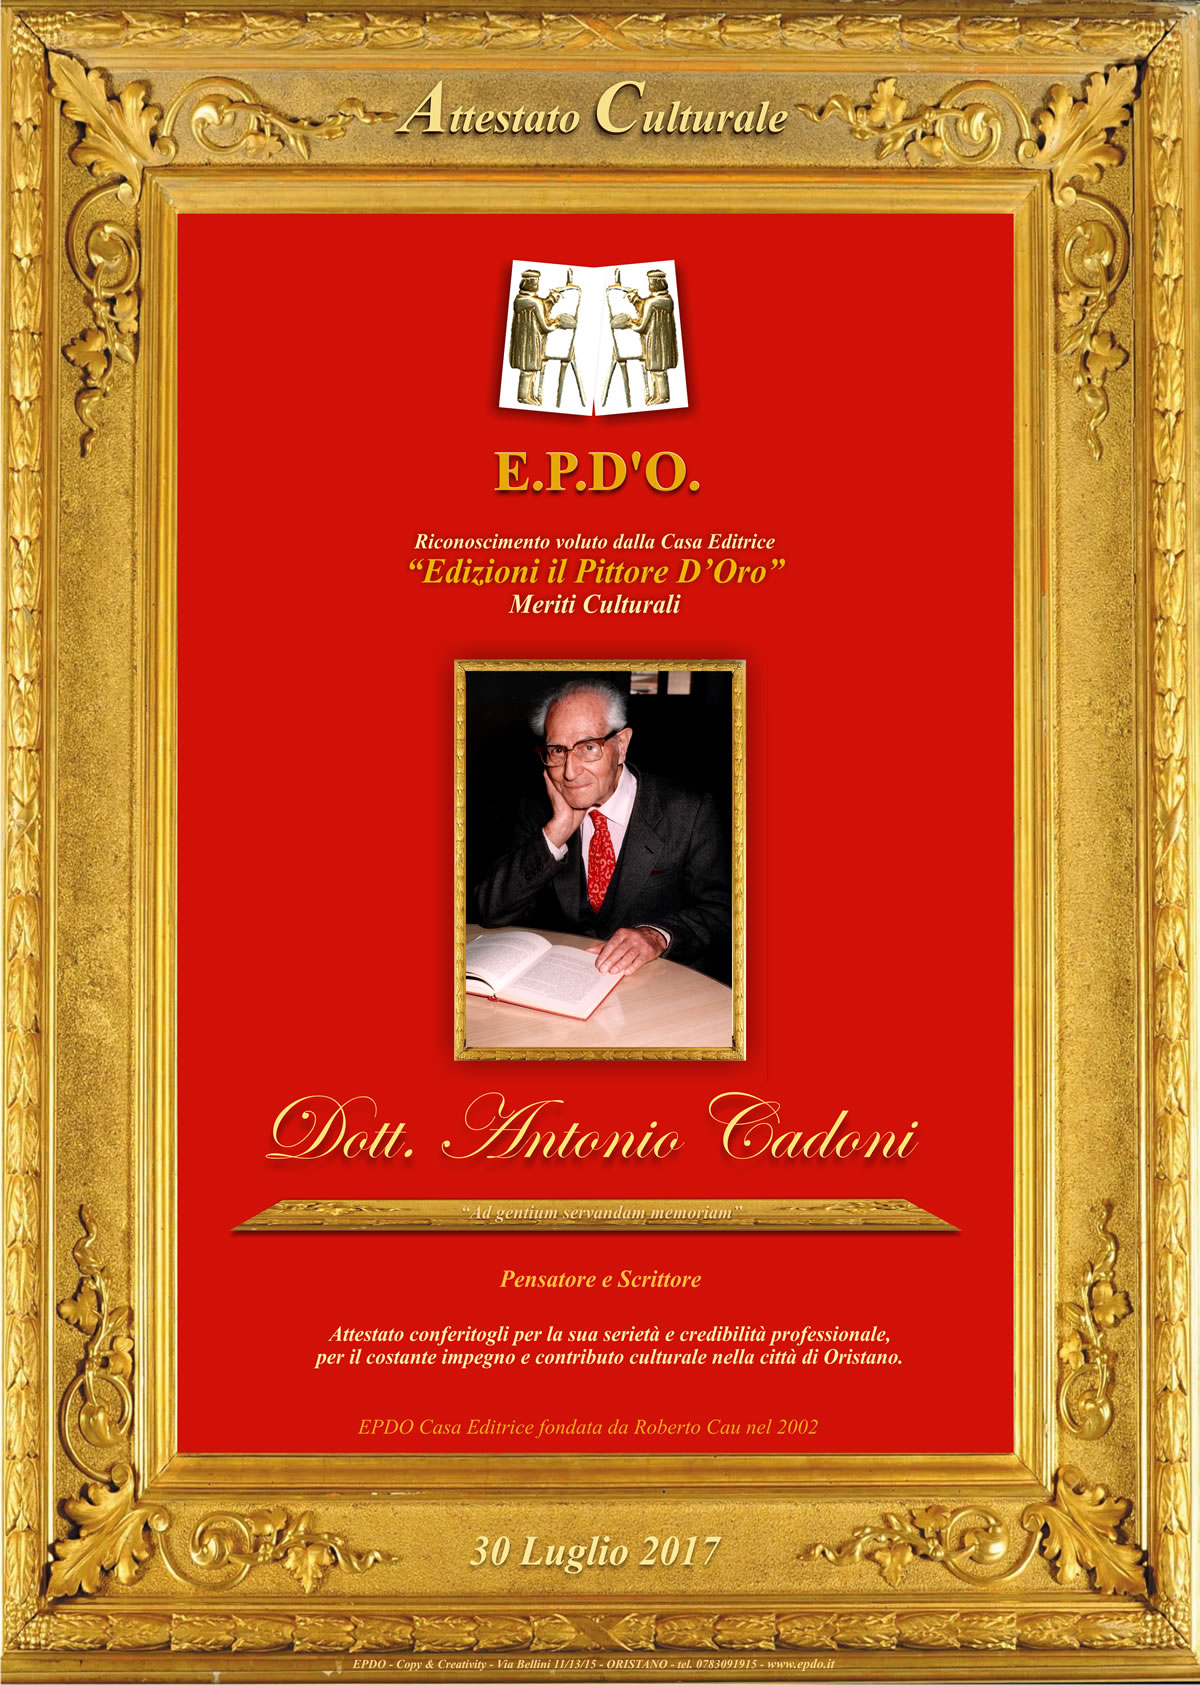 EPDO -Attestato Culturale Antonio Cadoni